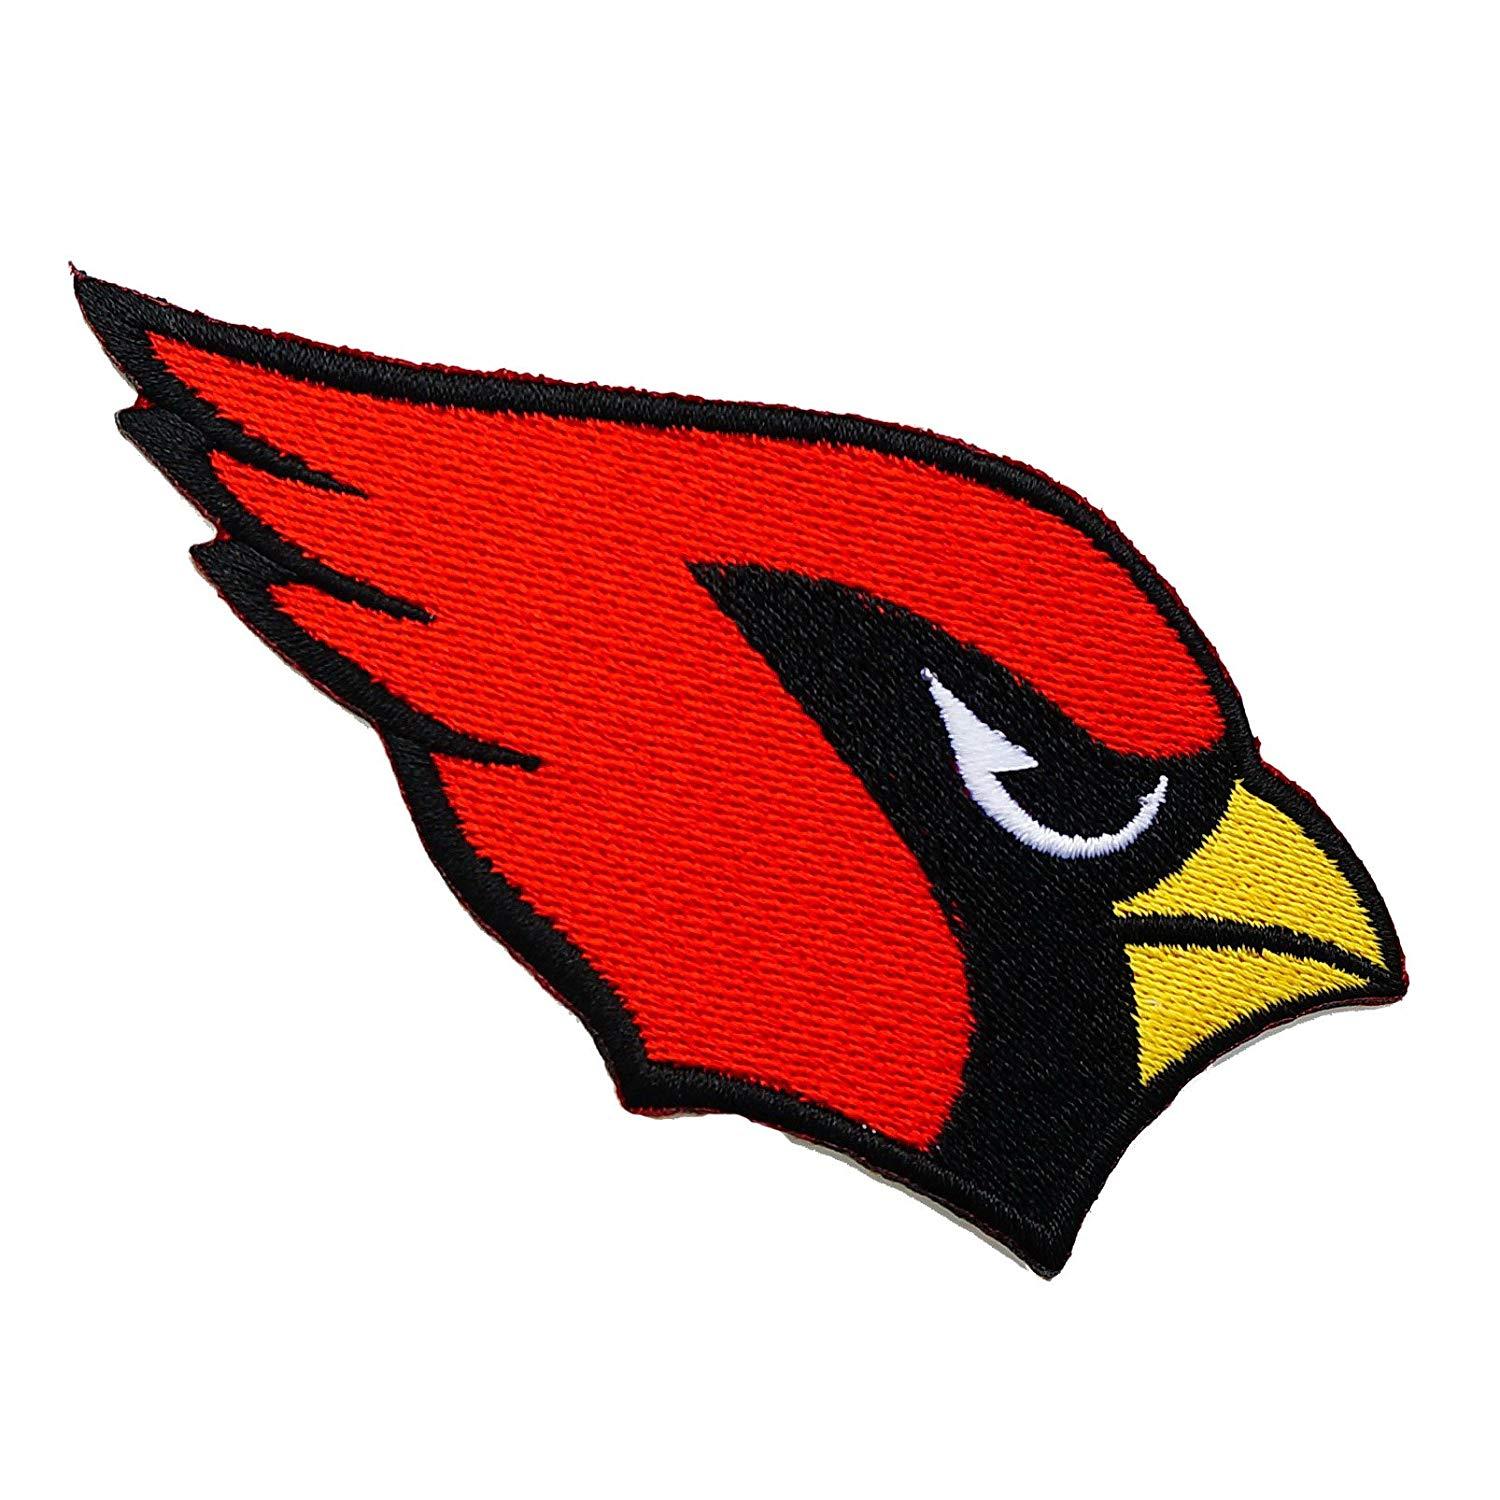 Cardinal Bird Football Logo - Arizona Cardinals NFL Embroidered Iron on Patch Logo